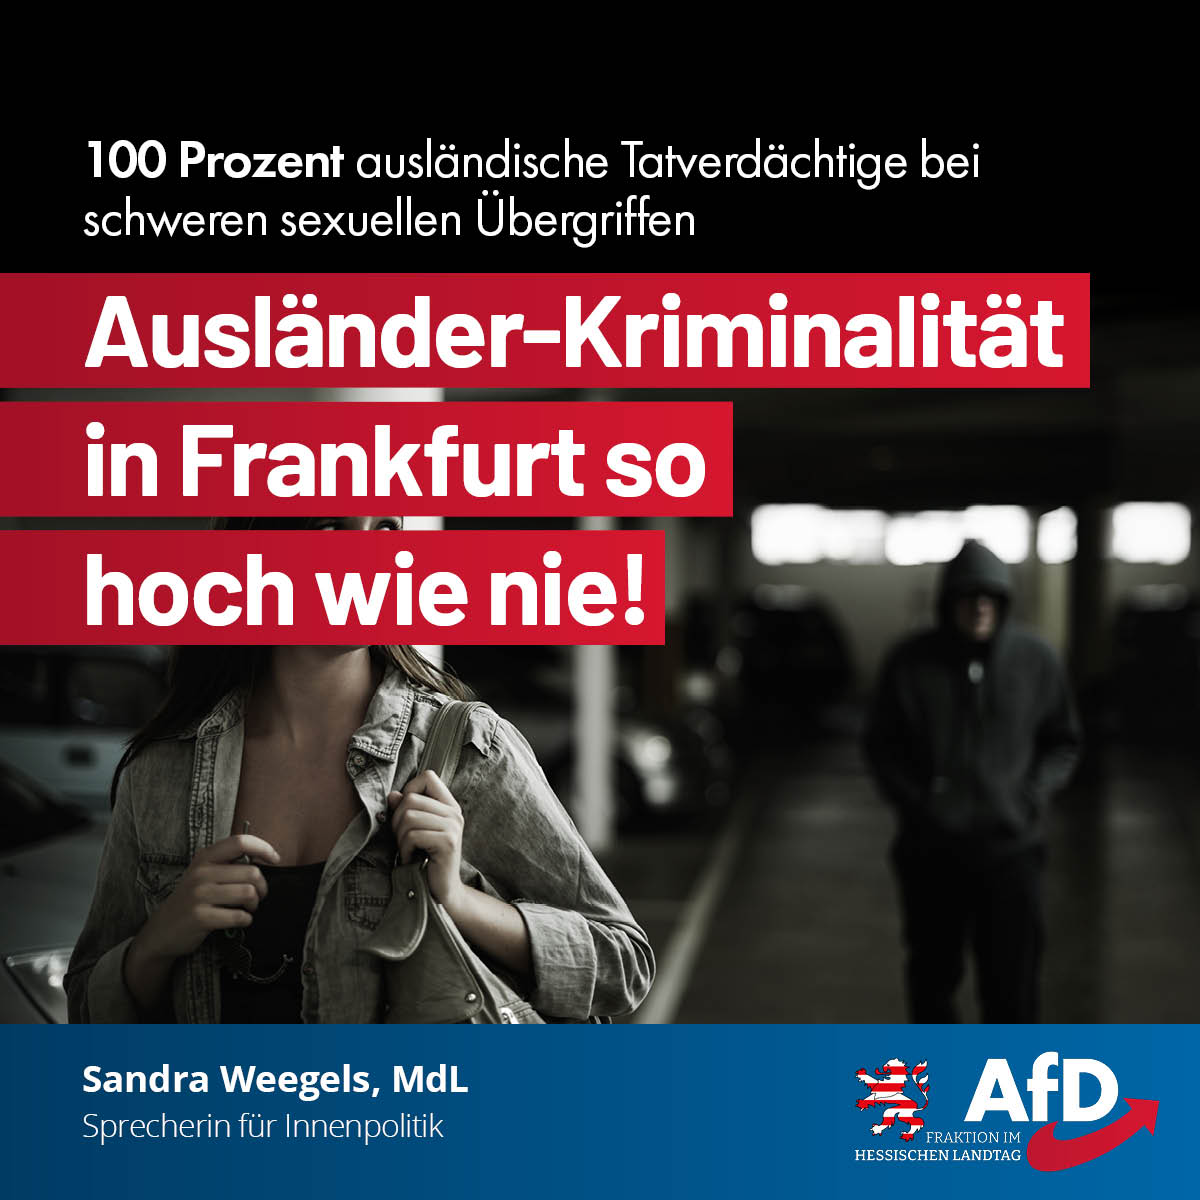 You are currently viewing Ausländer-Kriminalität in Frankfurt so hoch wie nie: 100 Prozent (!) ausländische Tatverdächtige bei schweren sexuellen Übergriffen